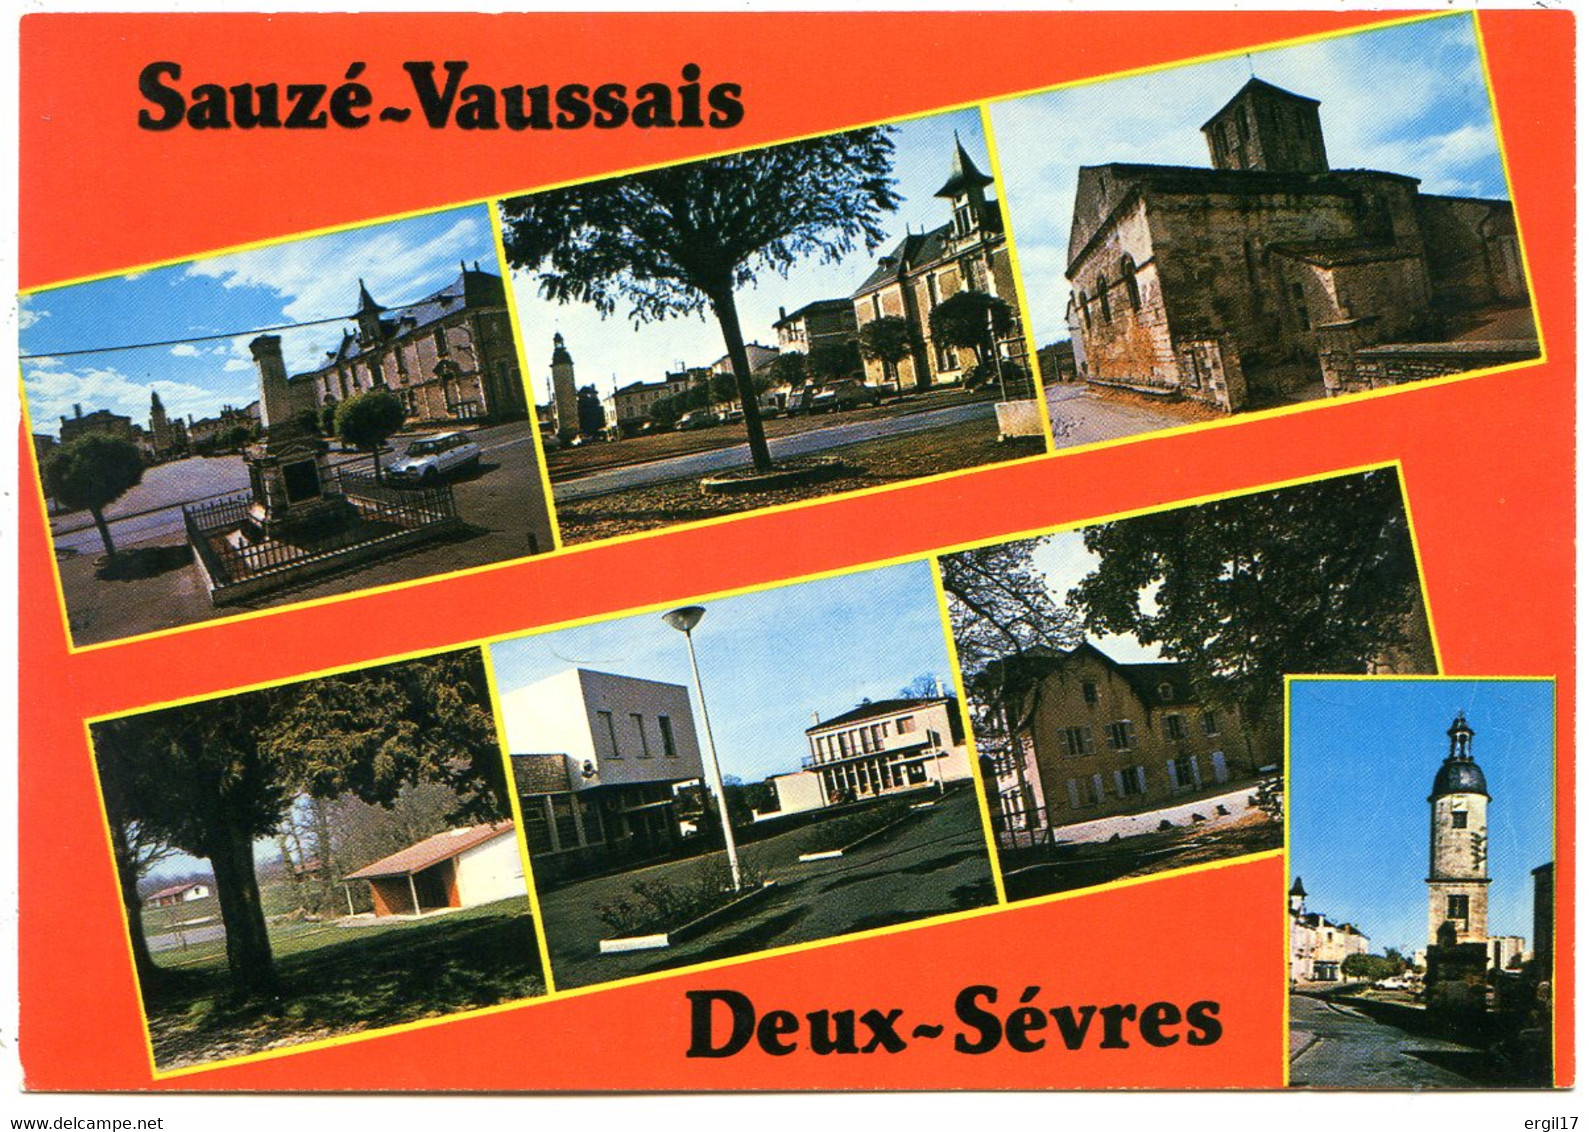 79190 SAUZÉ-VAUSSAIS - Multivues De La Commune - Sauze Vaussais